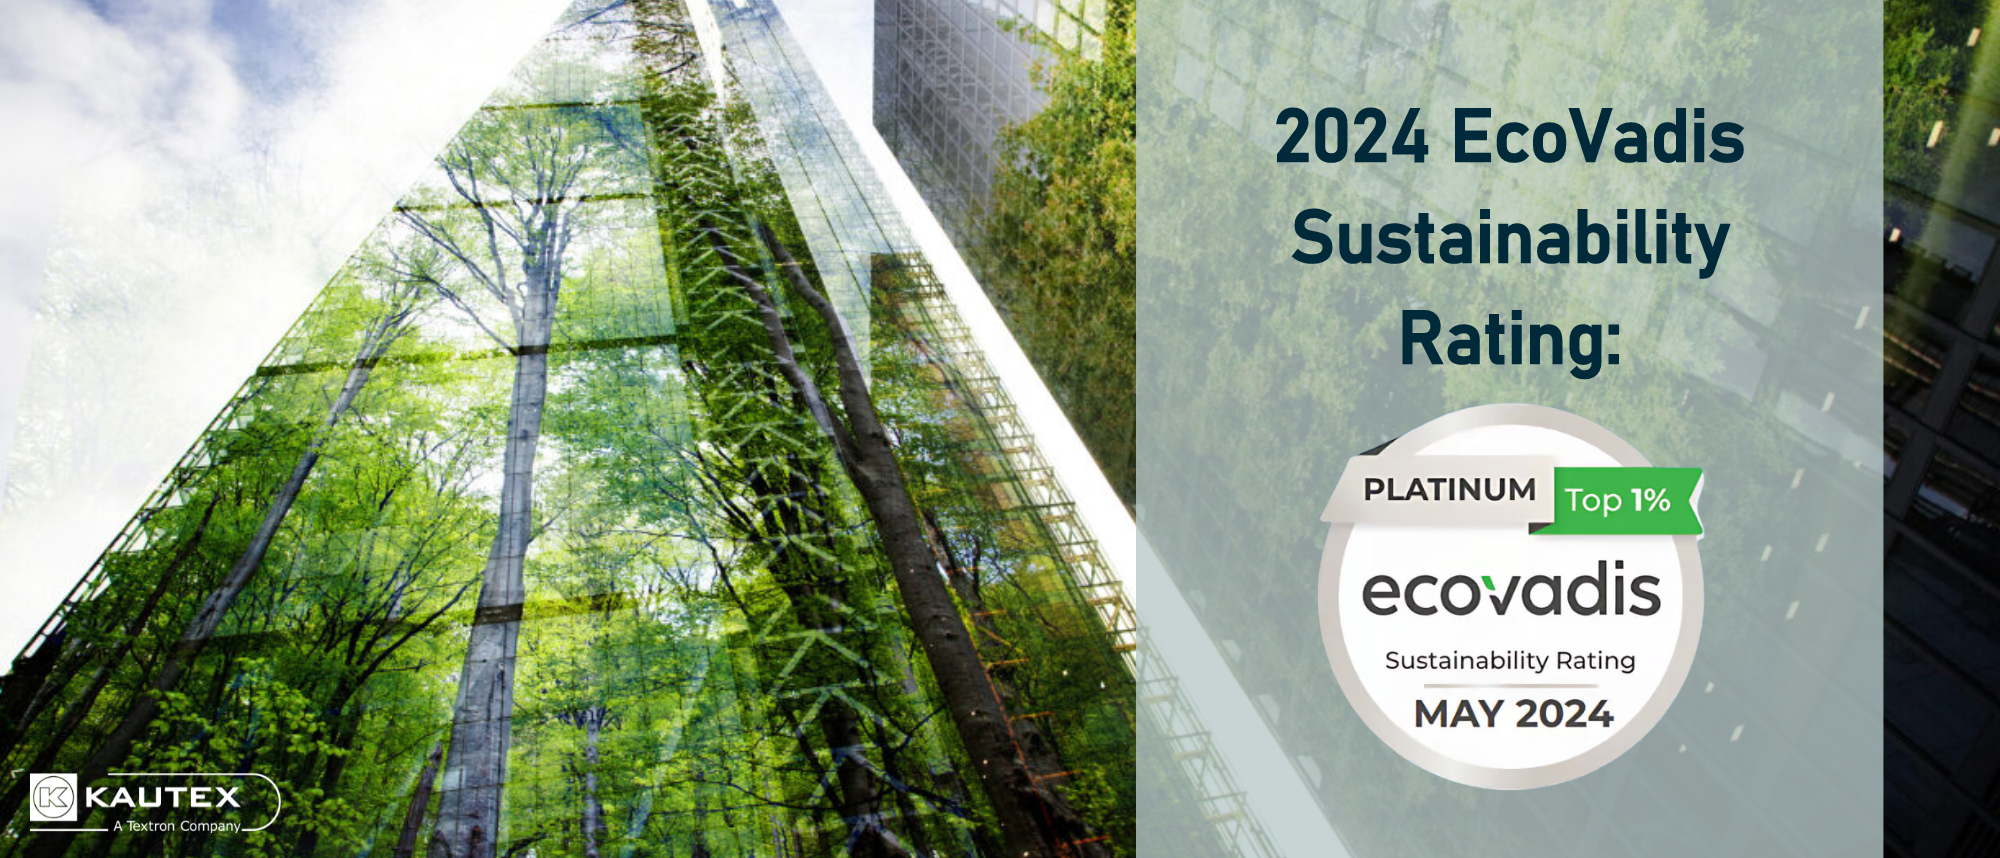 EcoVadis Sustainability Rating - Platinum